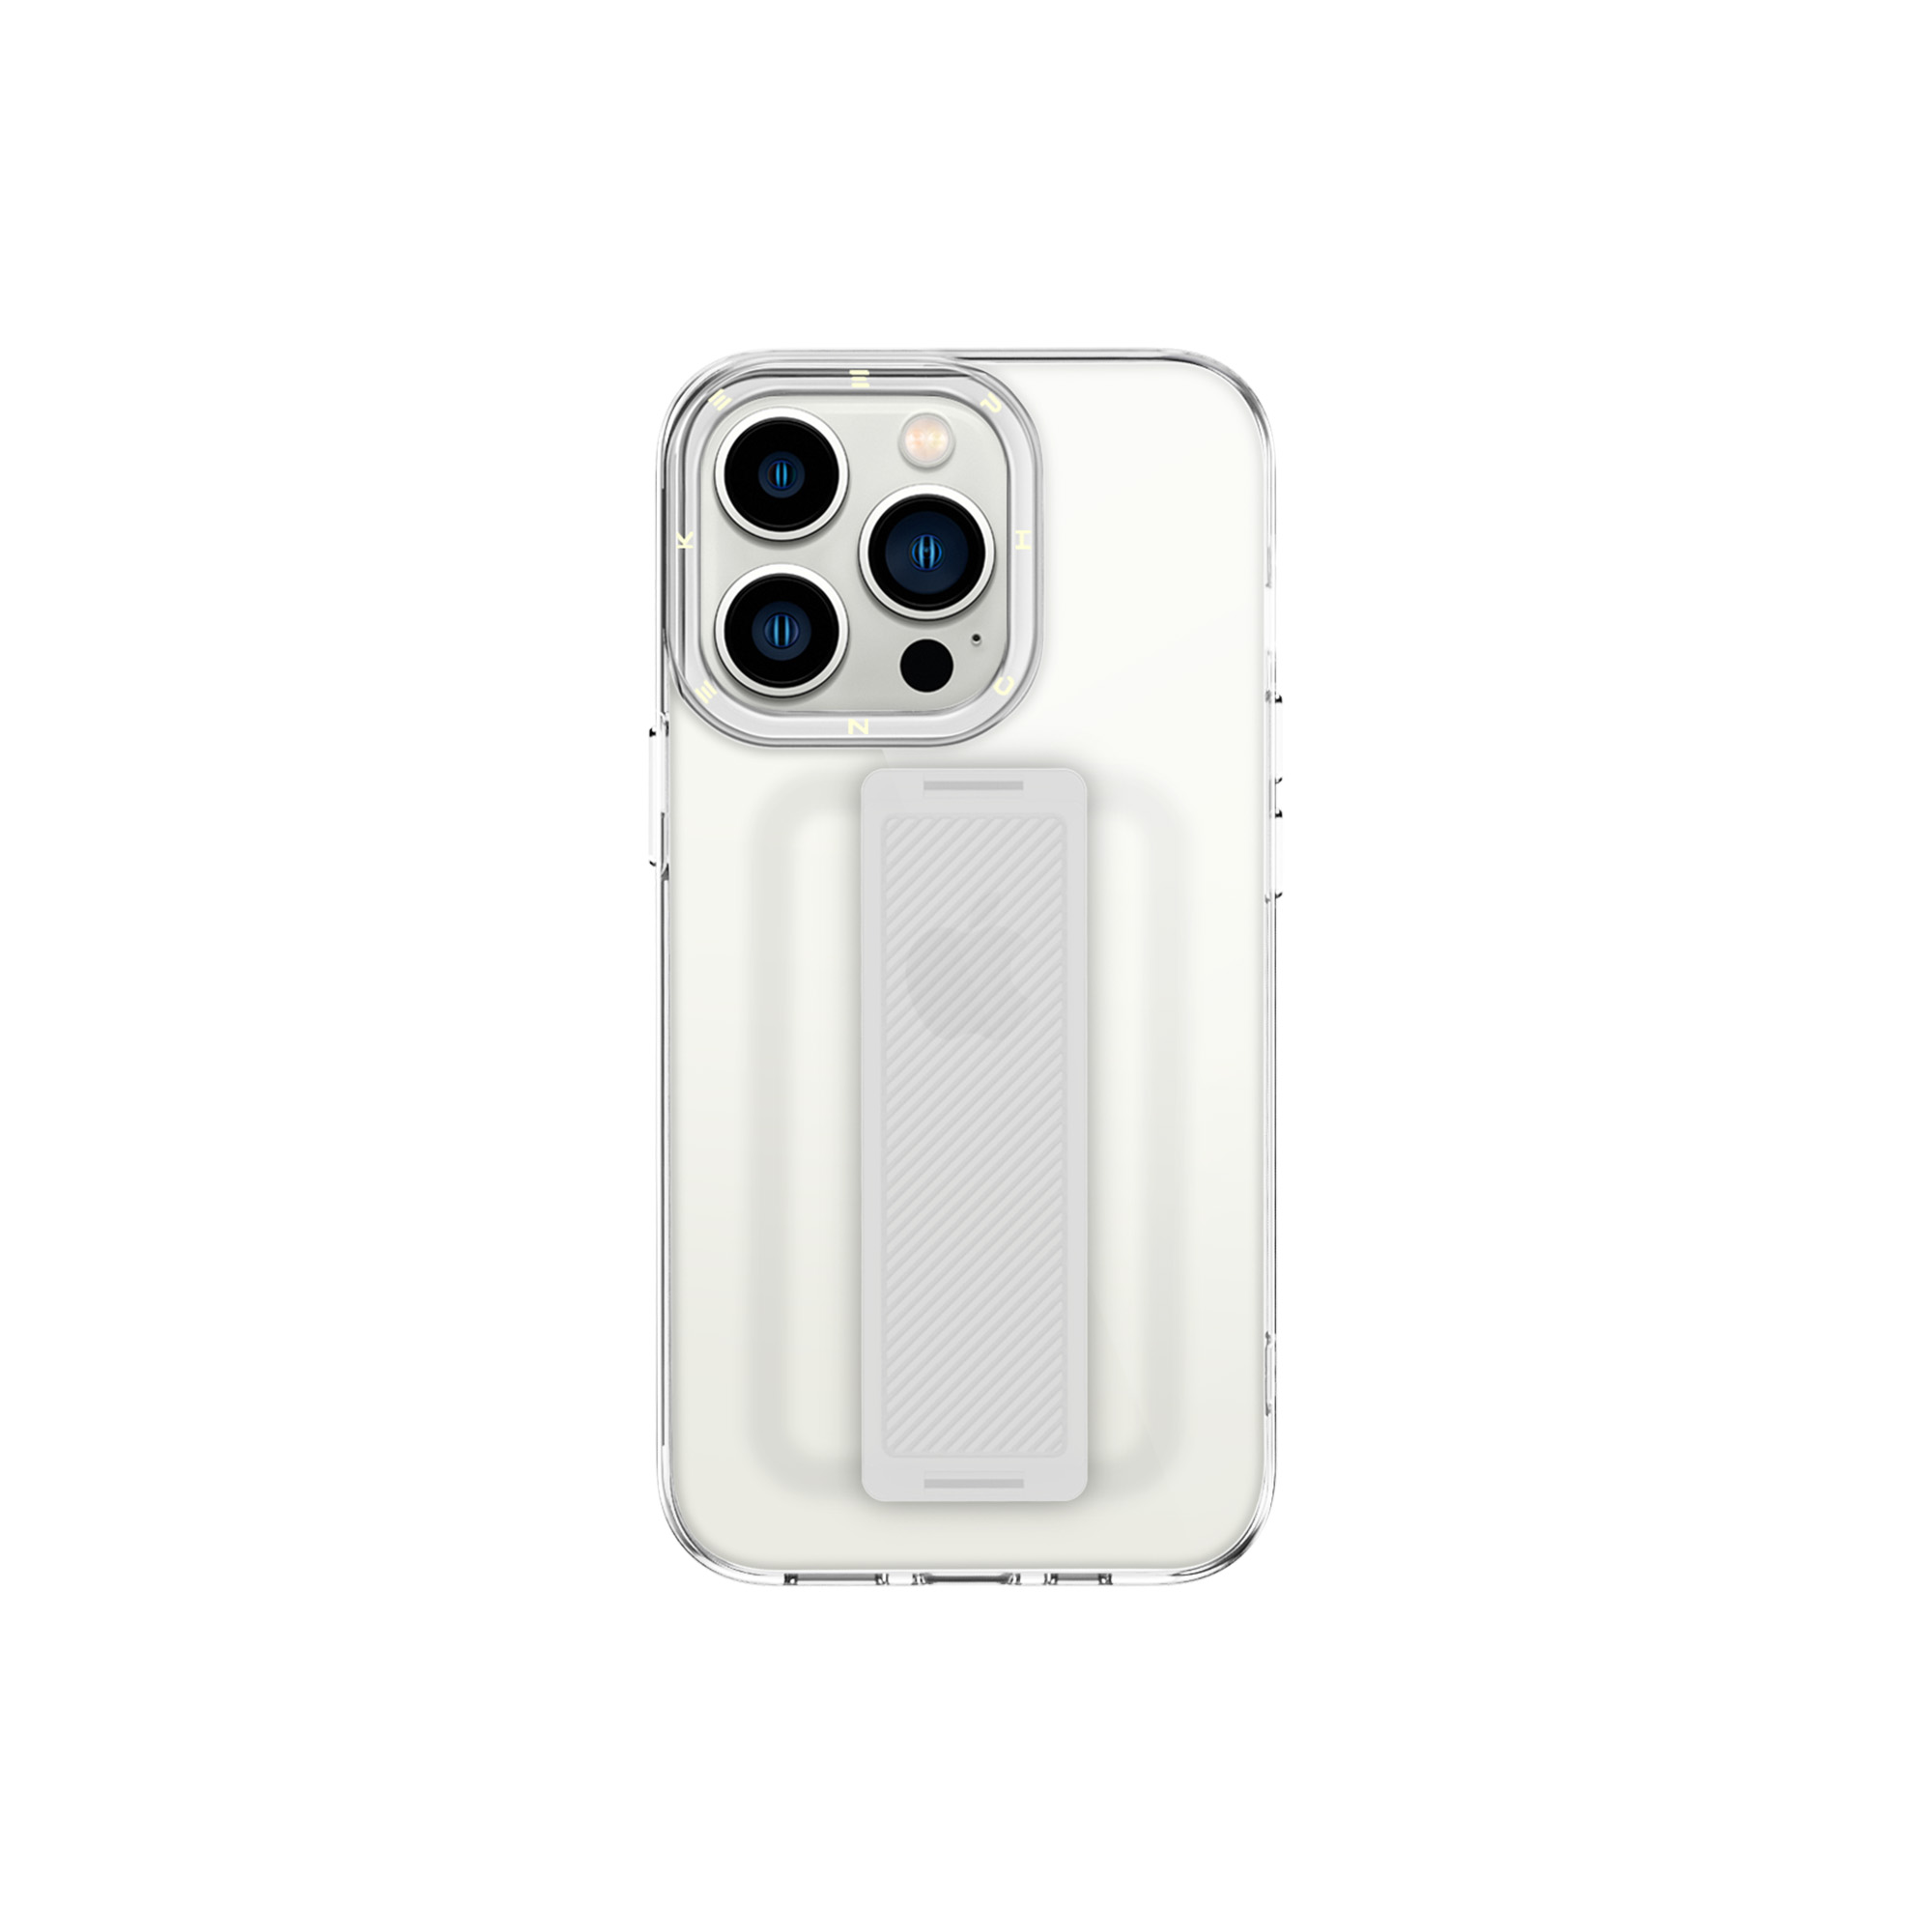 آنباکس کاور کی فون مدل Heldro-Crystal مناسب برای گوشی موبایل اپل Iphone 13 Pro Max توسط مریم محسنی در تاریخ ۱۲ تیر ۱۴۰۱